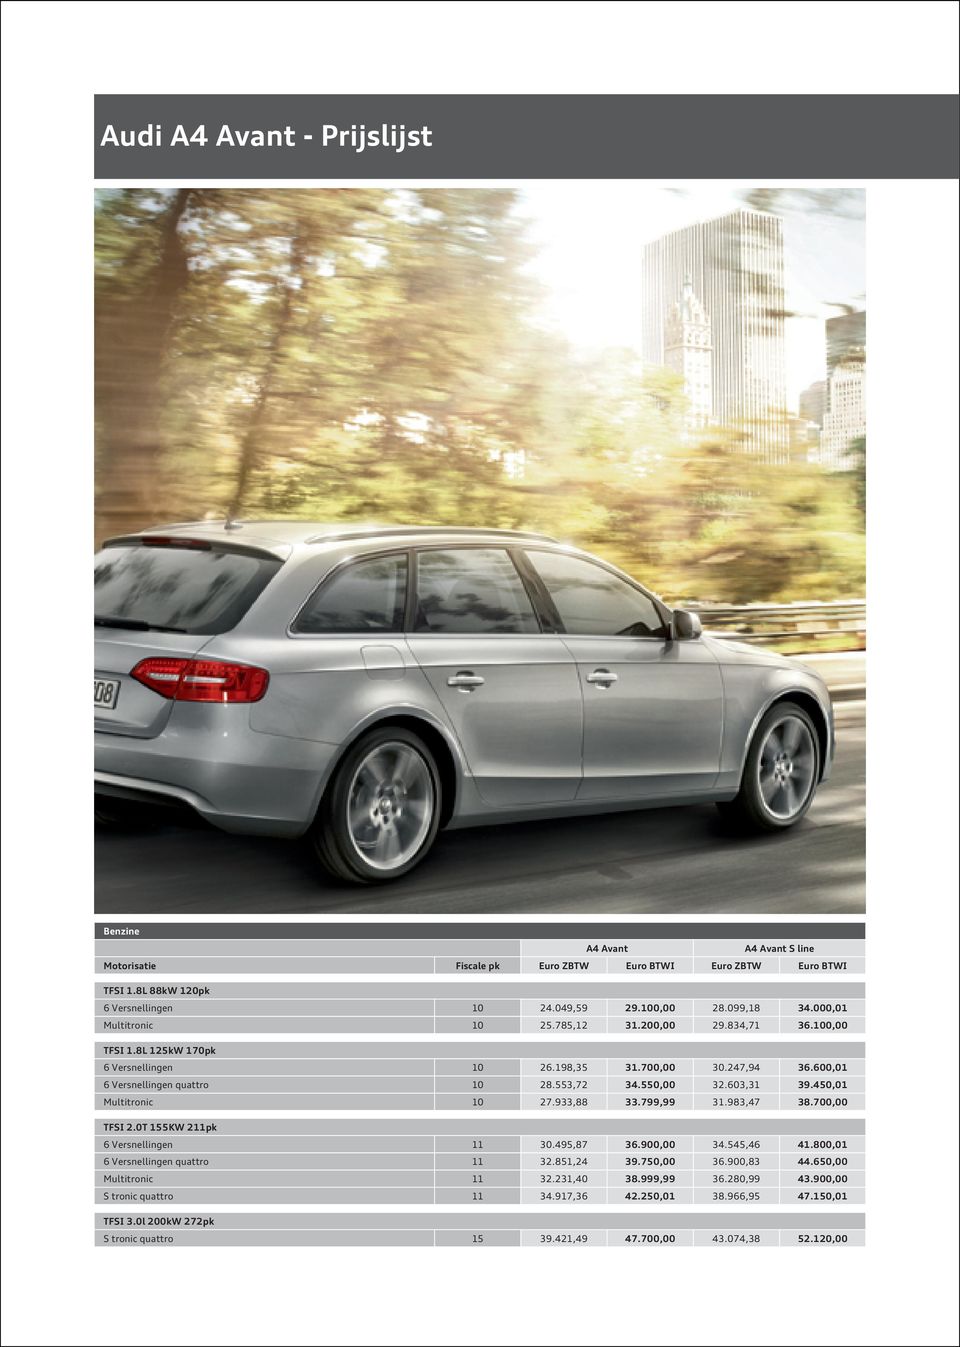 tolerantie Vertrek ZuidAmerika Audi A4 Avant - Prijslijst - PDF Free Download